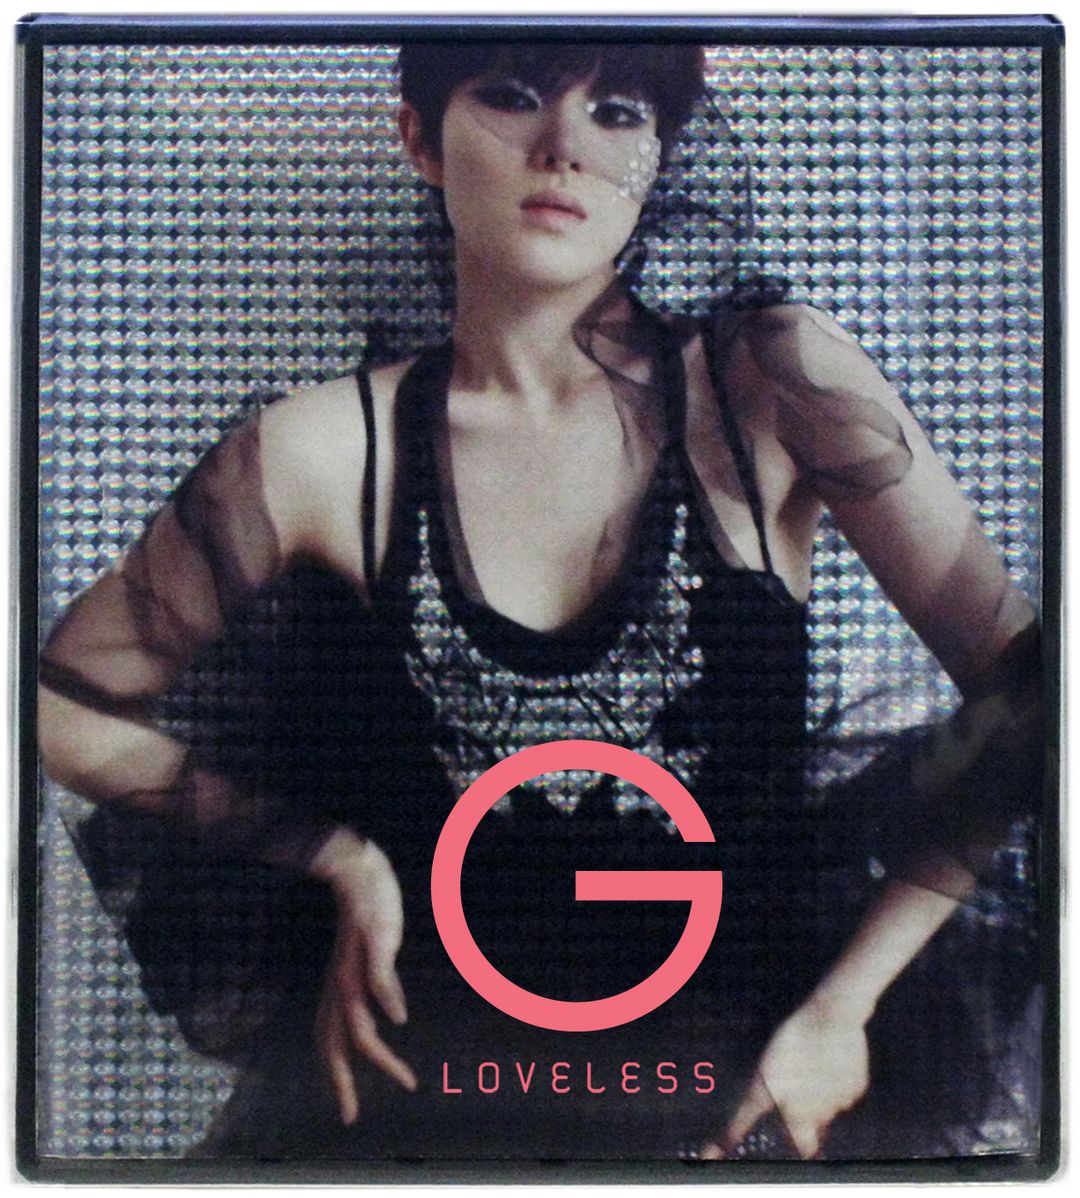 Gummy Loveless cover artwork